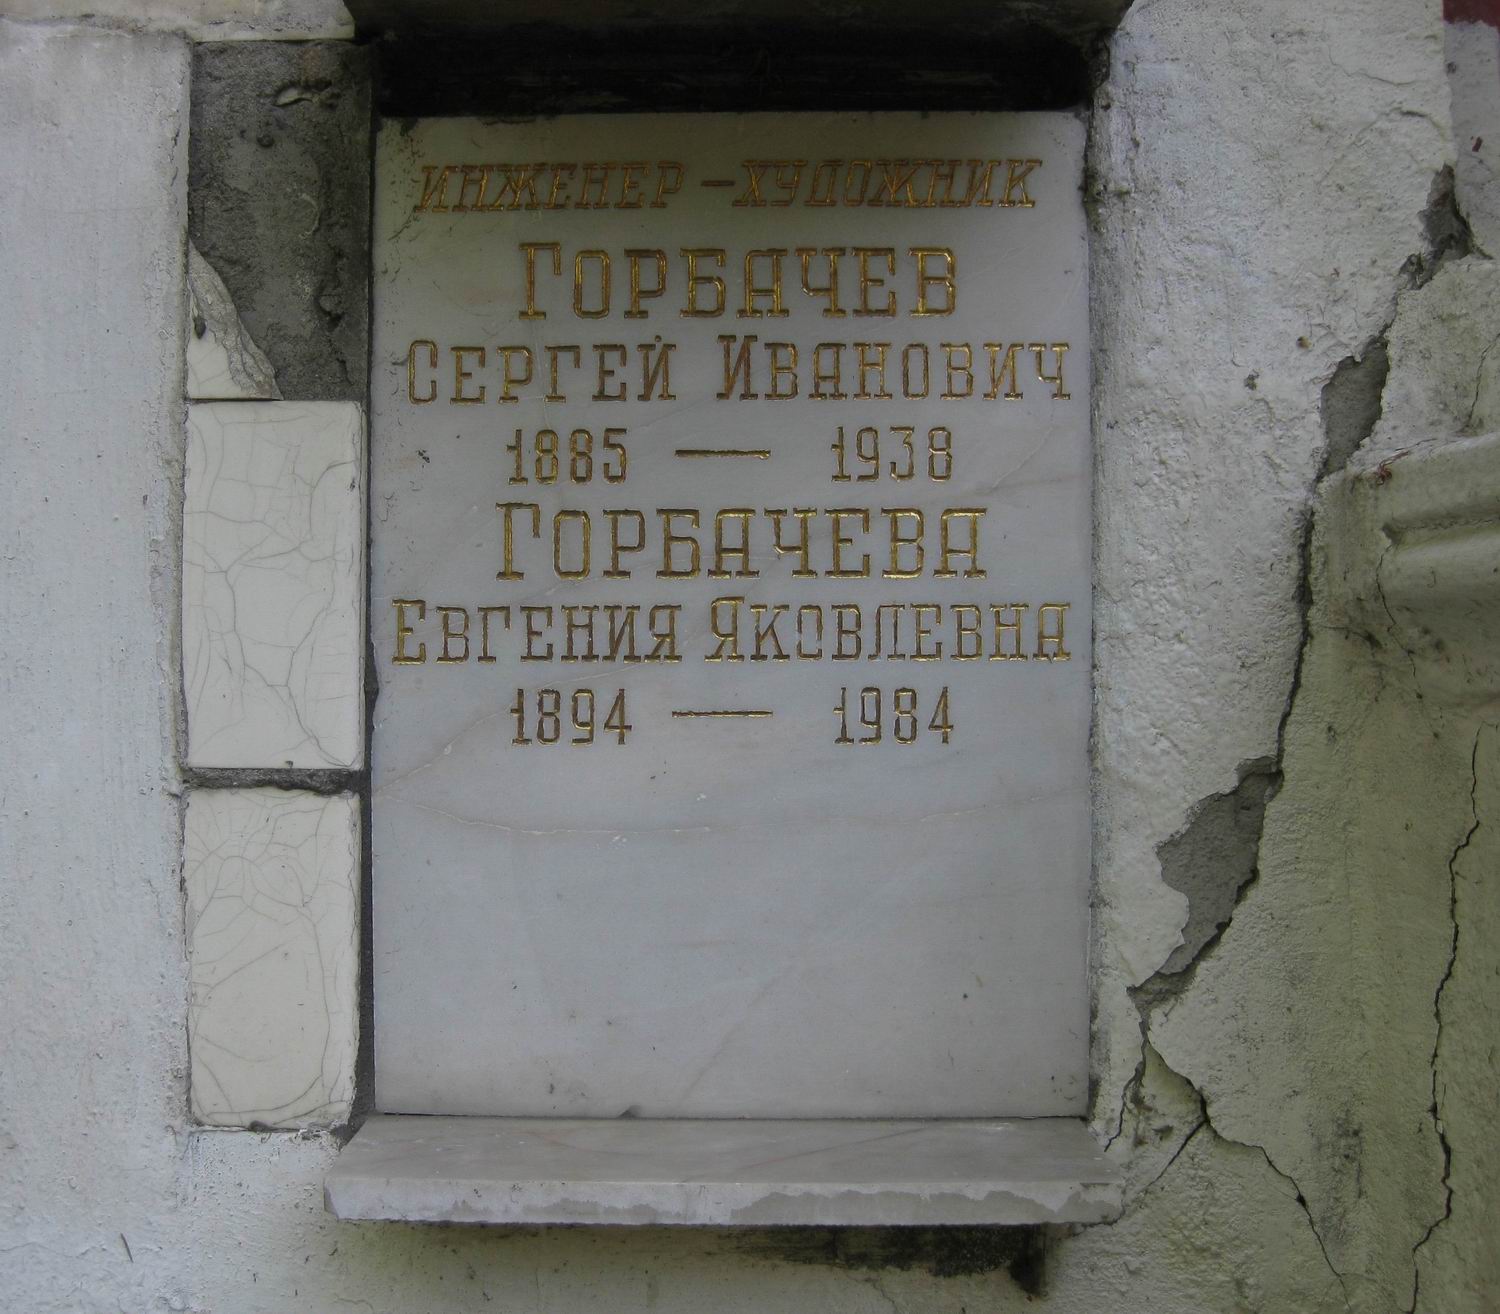 Плита на нише Горбачёва С.И. (1885-1938), на Новодевичьем кладбище (колумбарий [56]-5-4).